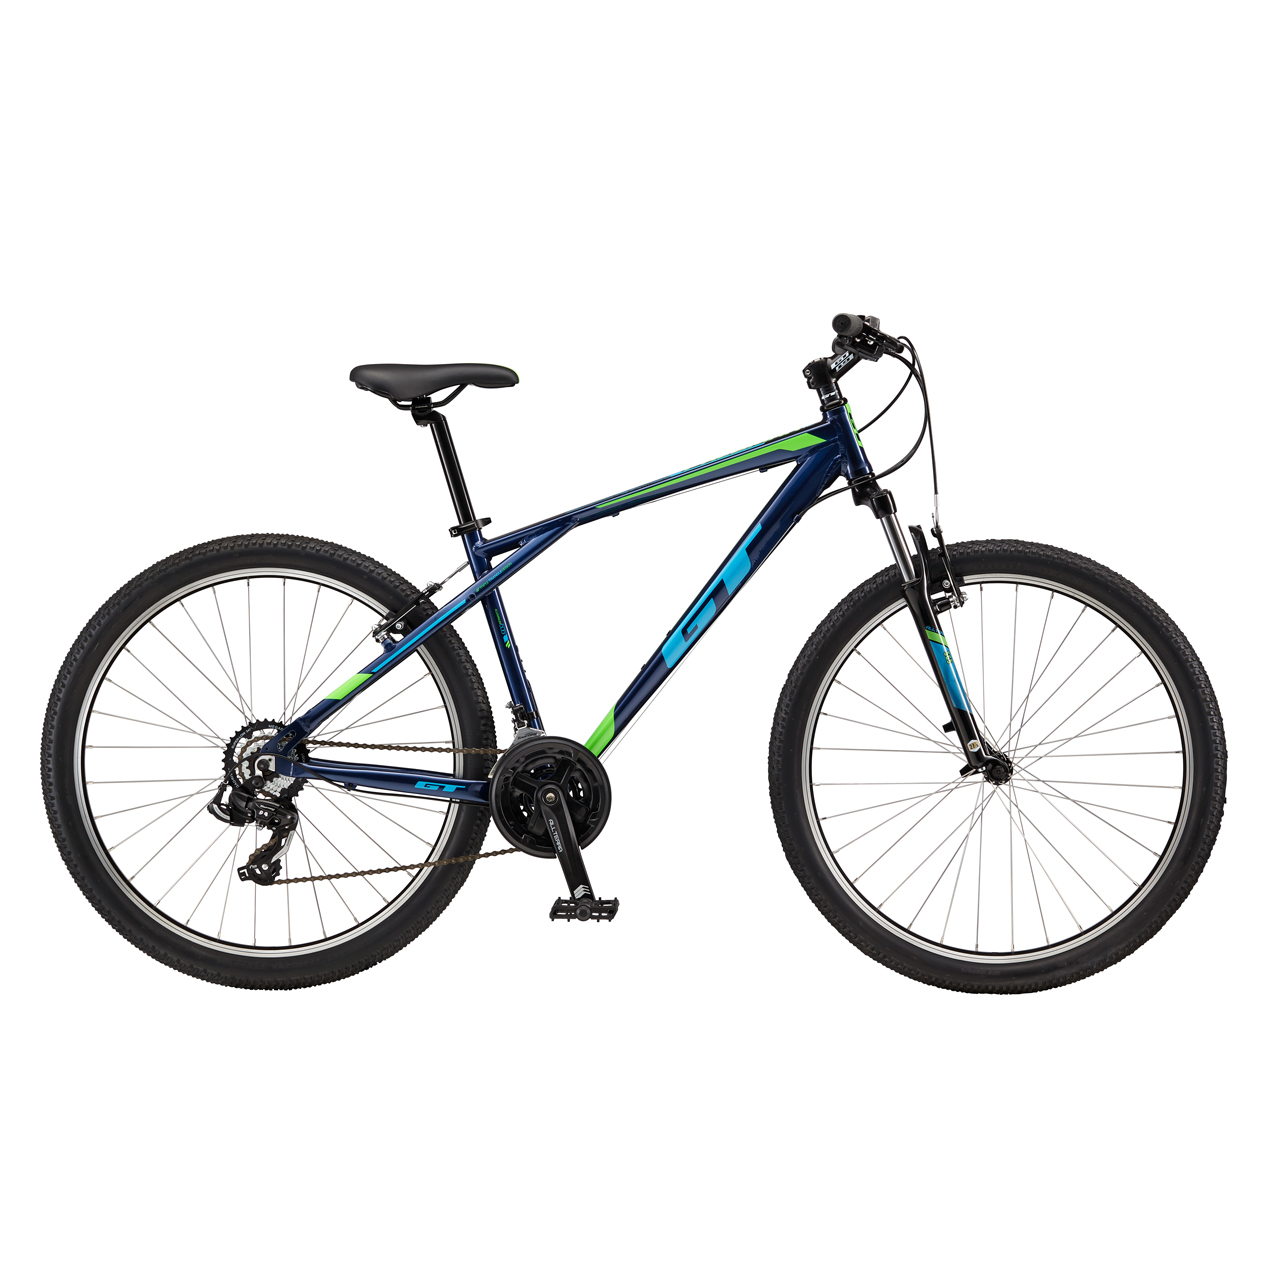 دوچرخه کوهستان جی تی Palomar Al سایز 27.5 رنگ آبی تیره2017